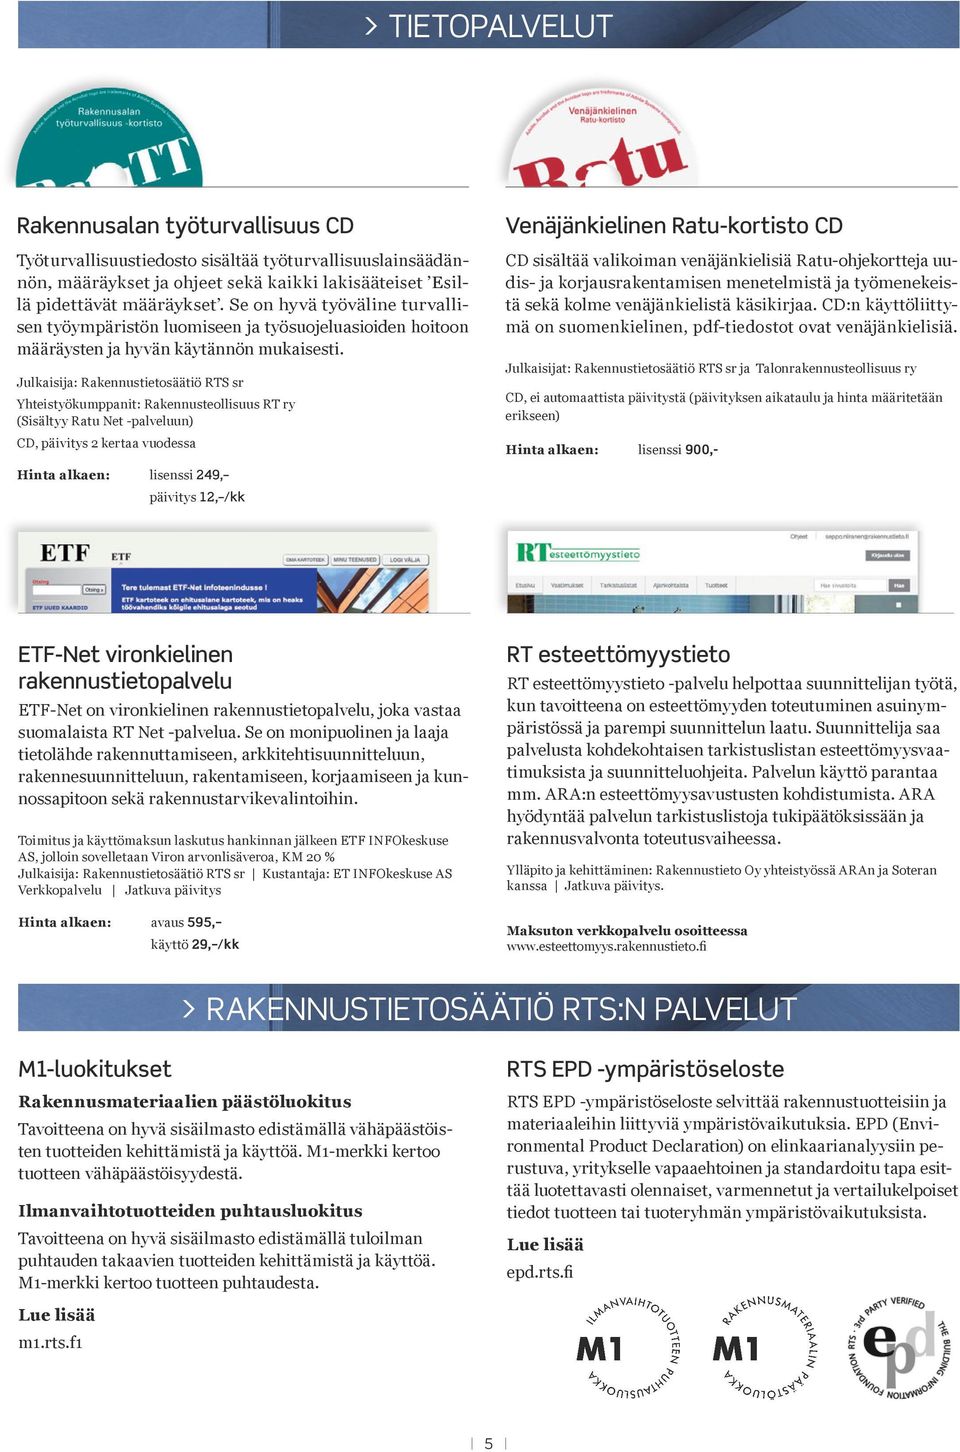 Julkaisija: Yhteistyökumppanit: Rakennusteollisuus RT ry (Sisältyy Ratu Net -palveluun) CD, päivitys 2 kertaa vuodessa Hinta alkaen: lisenssi 249, päivitys 12, /kk Venäjänkielinen Ratu-kortisto CD CD